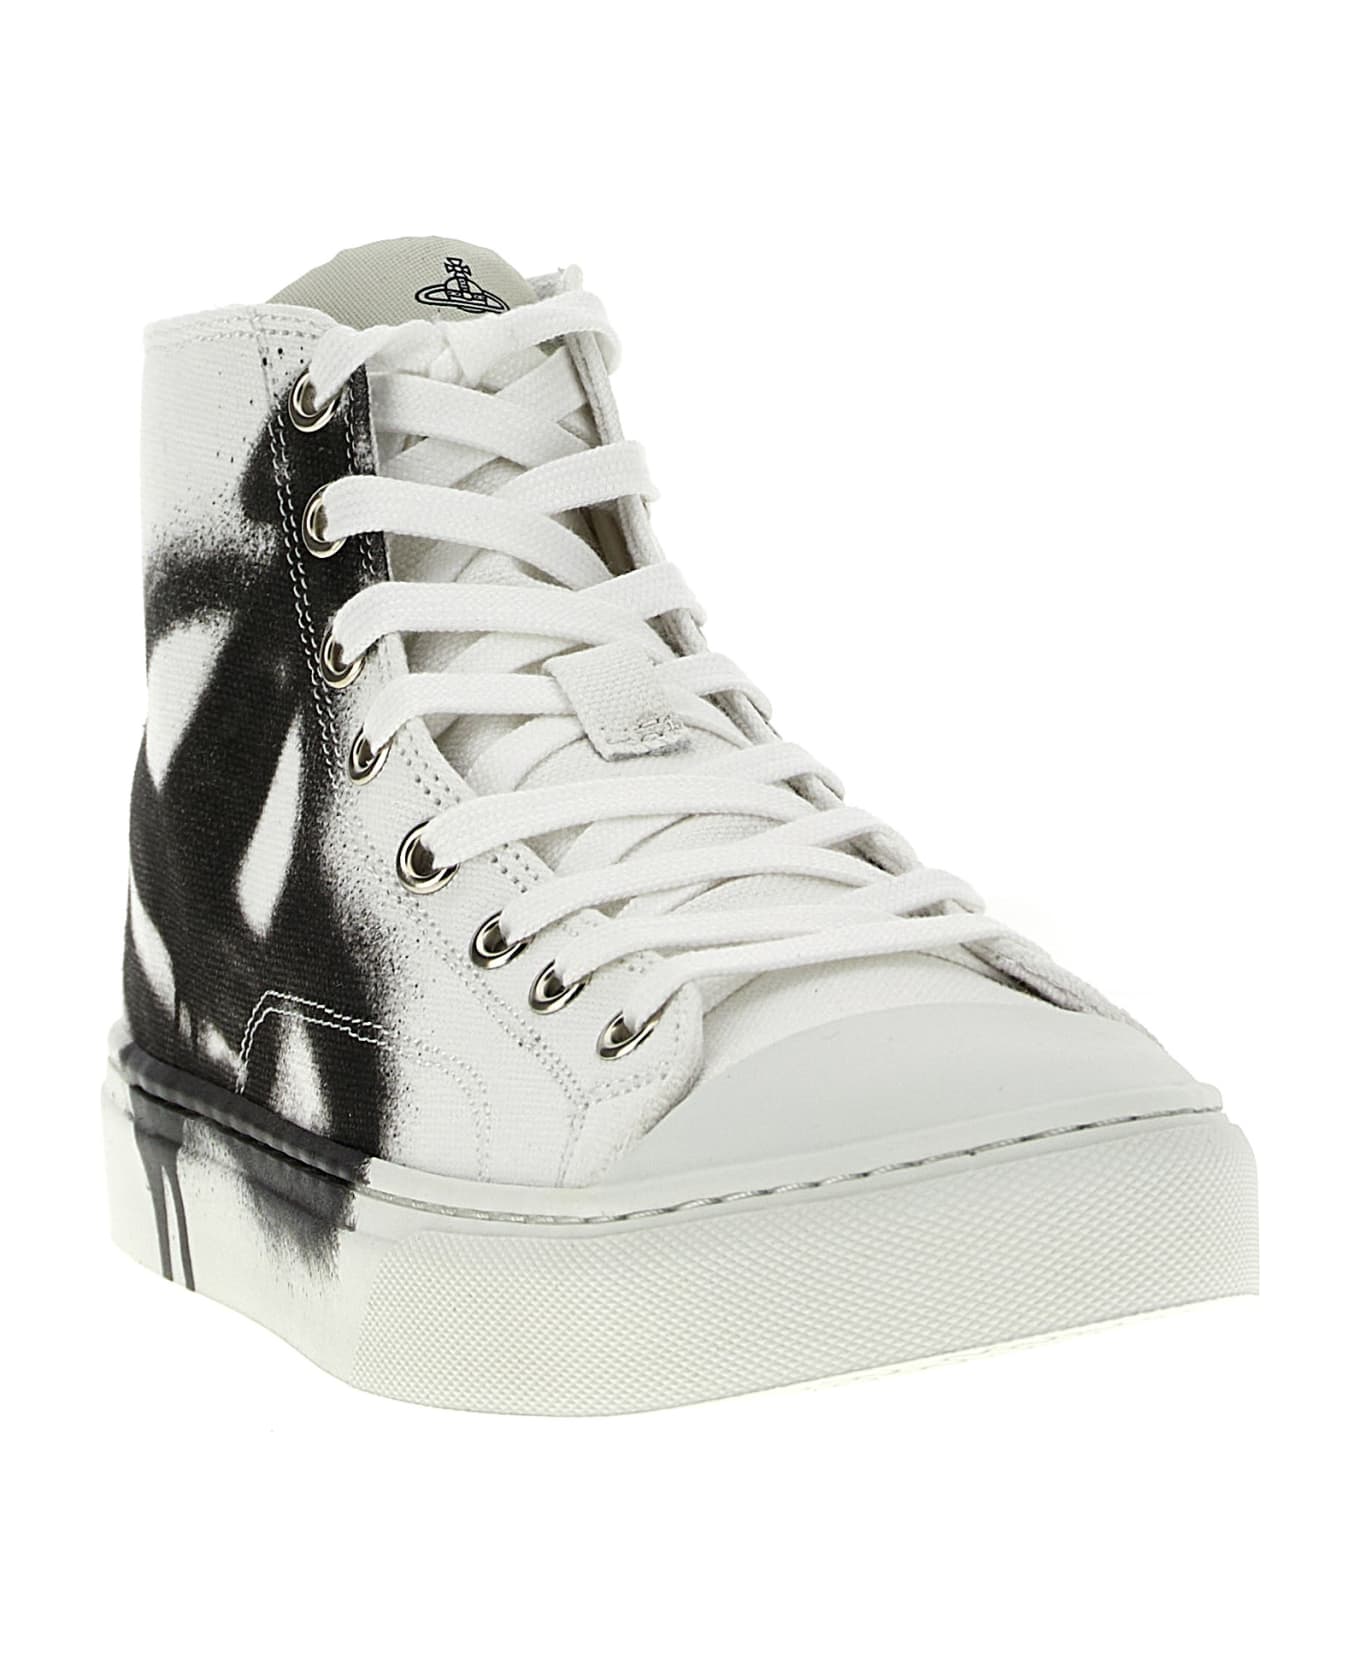 Vivienne Westwood 'plimsoll' Sneakers - White/Black